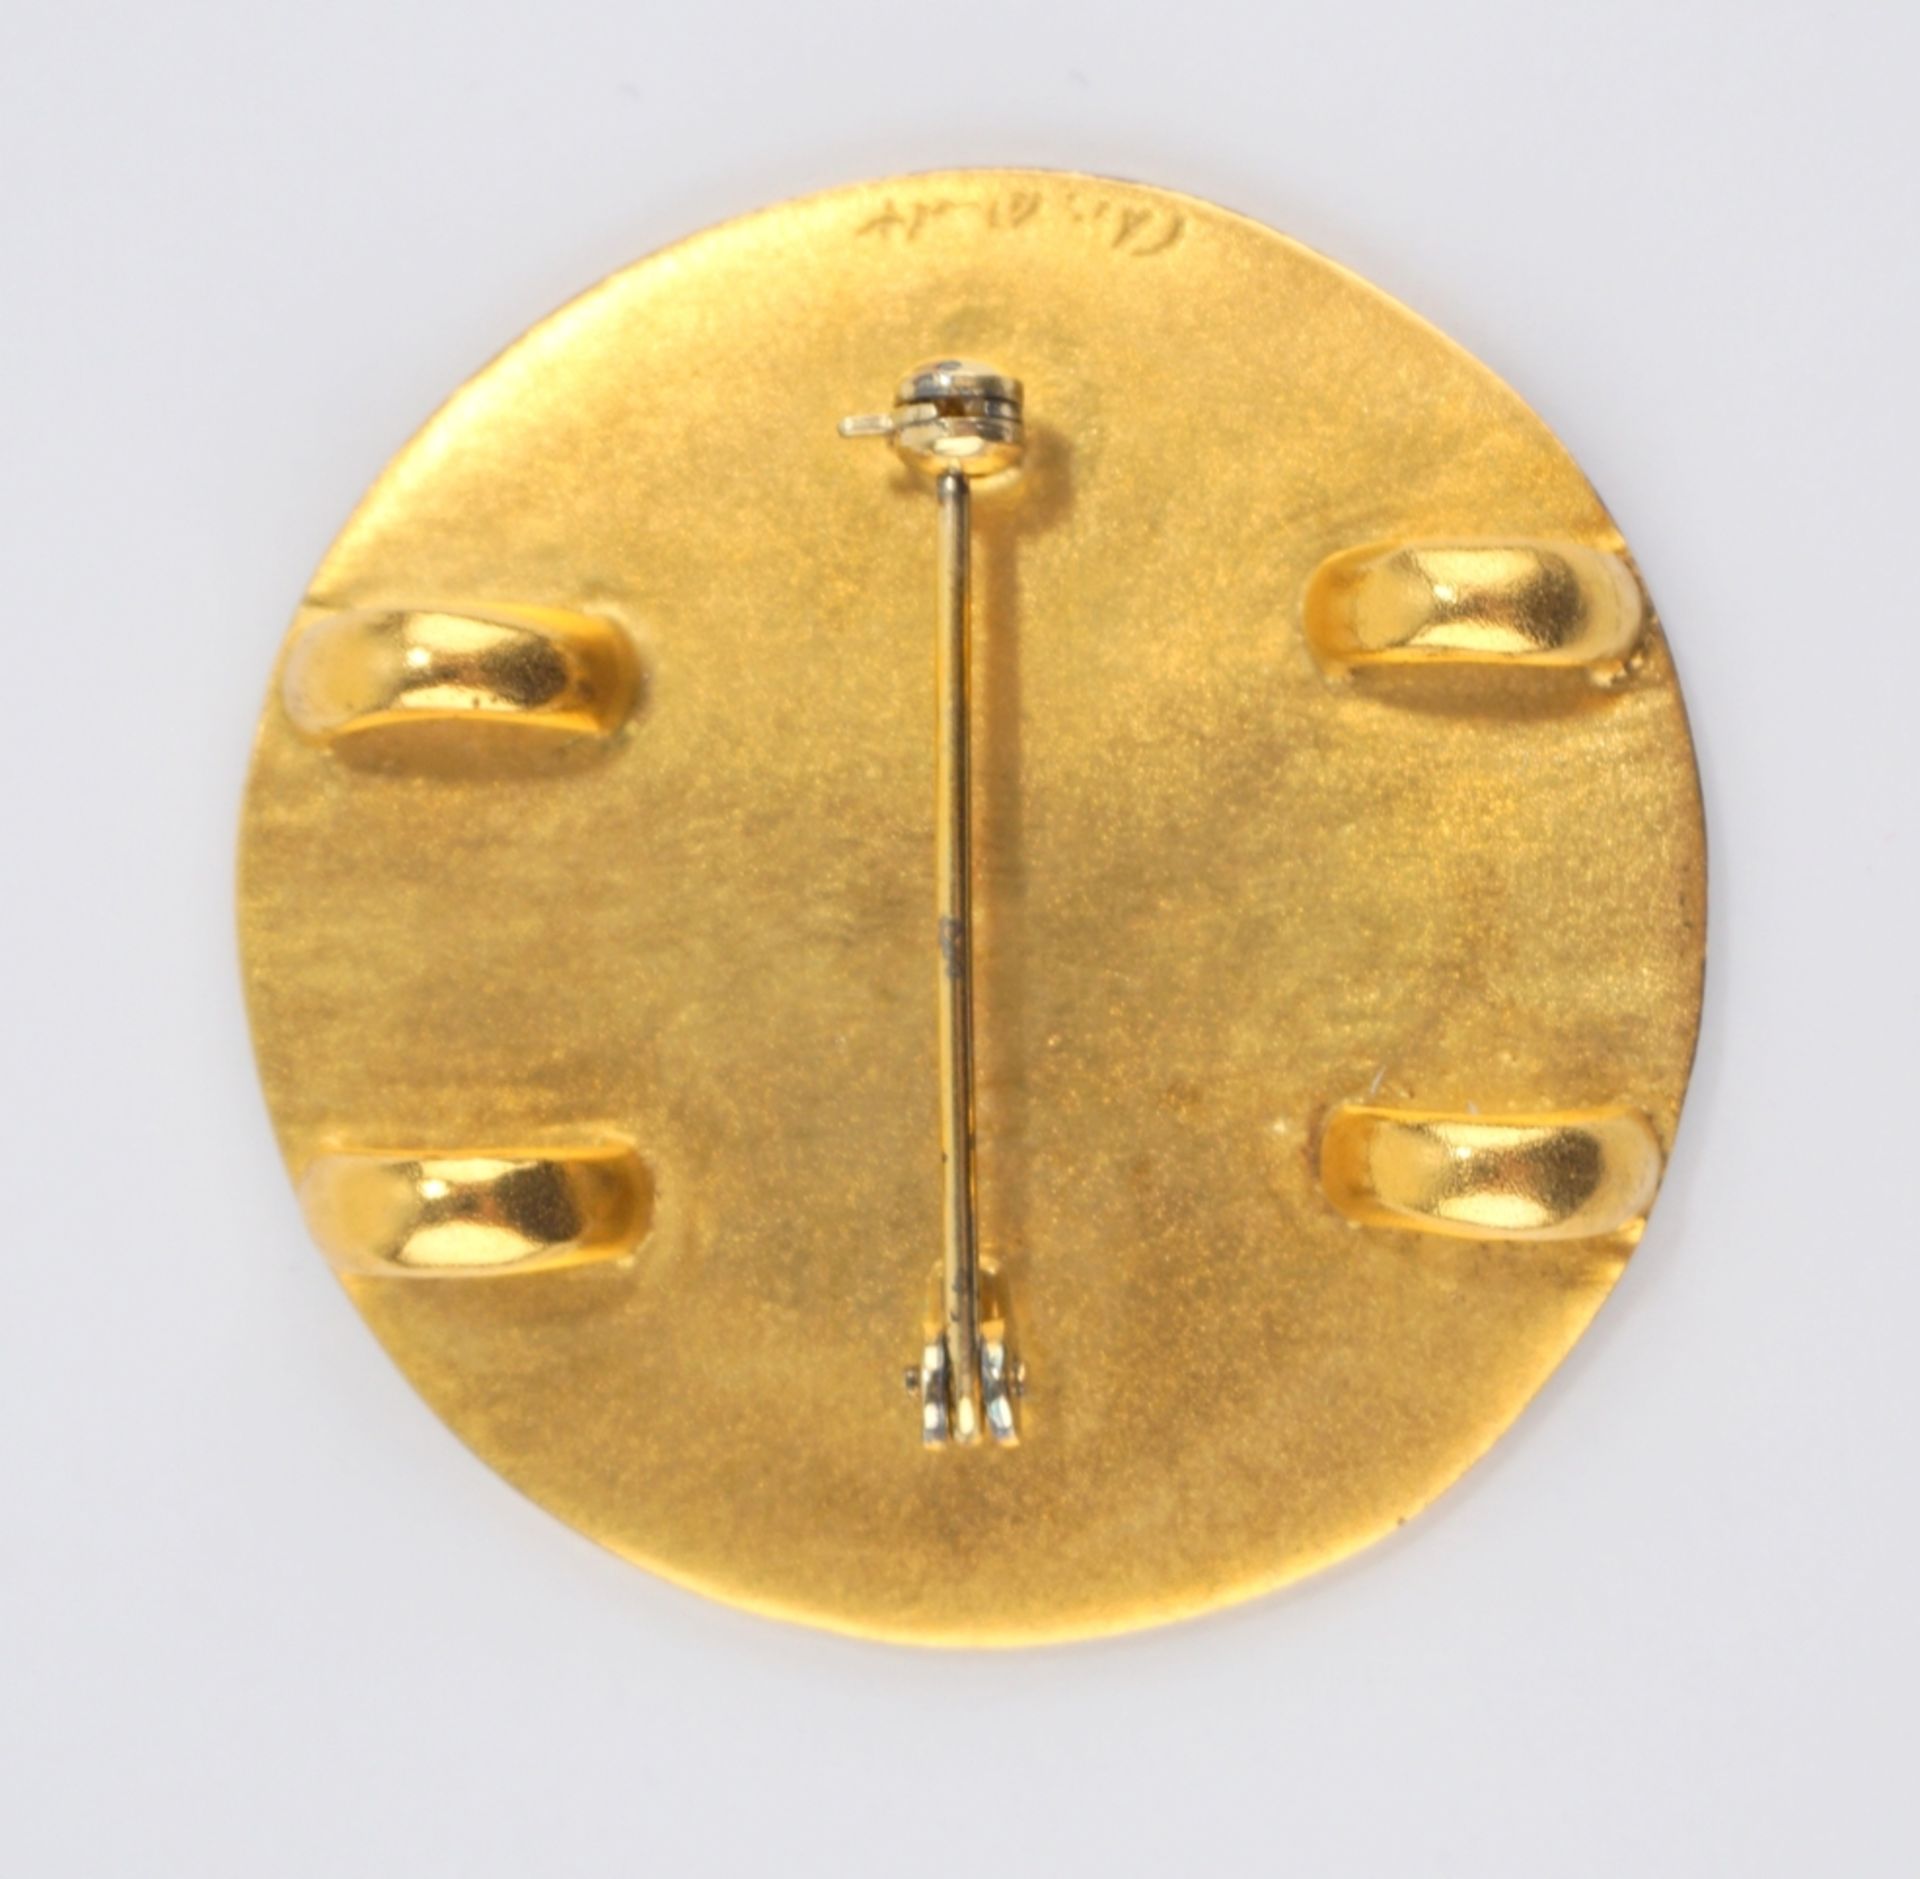 Anhänger / Brosche Himmelsscheibe von Nebra, Bronze mit Teilvergoldung - Image 2 of 2